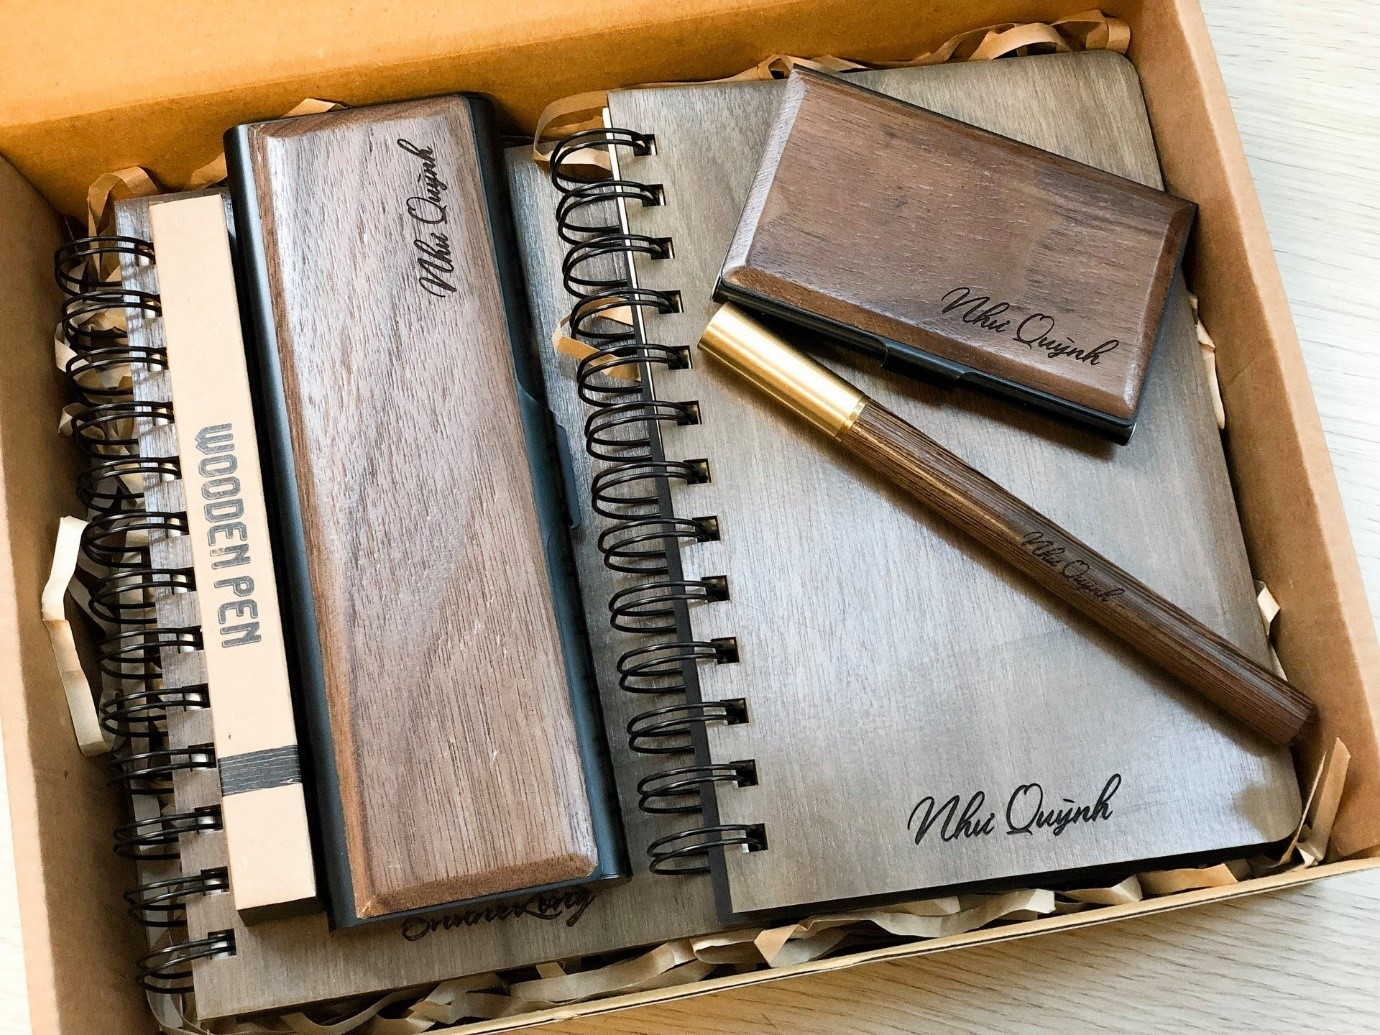 Quà tặng Thầy giáo – Combo sổ bìa gỗ và bút gỗ khắc tên